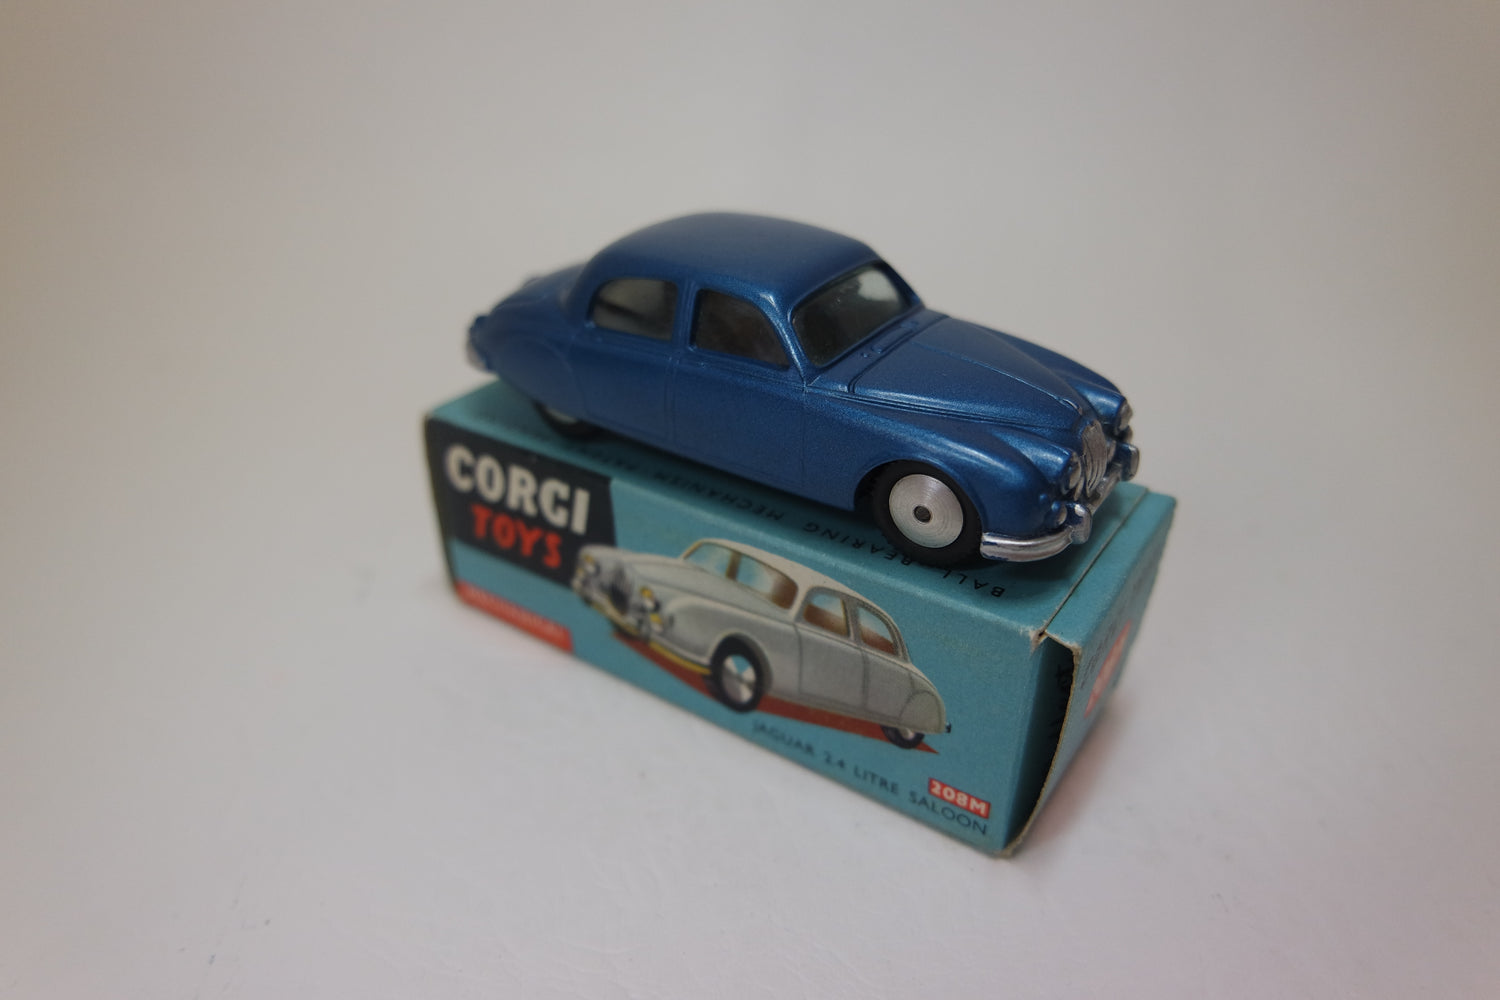 Corgi Toys 208m Jaguar 2.4 Very Near Mint/Boxed